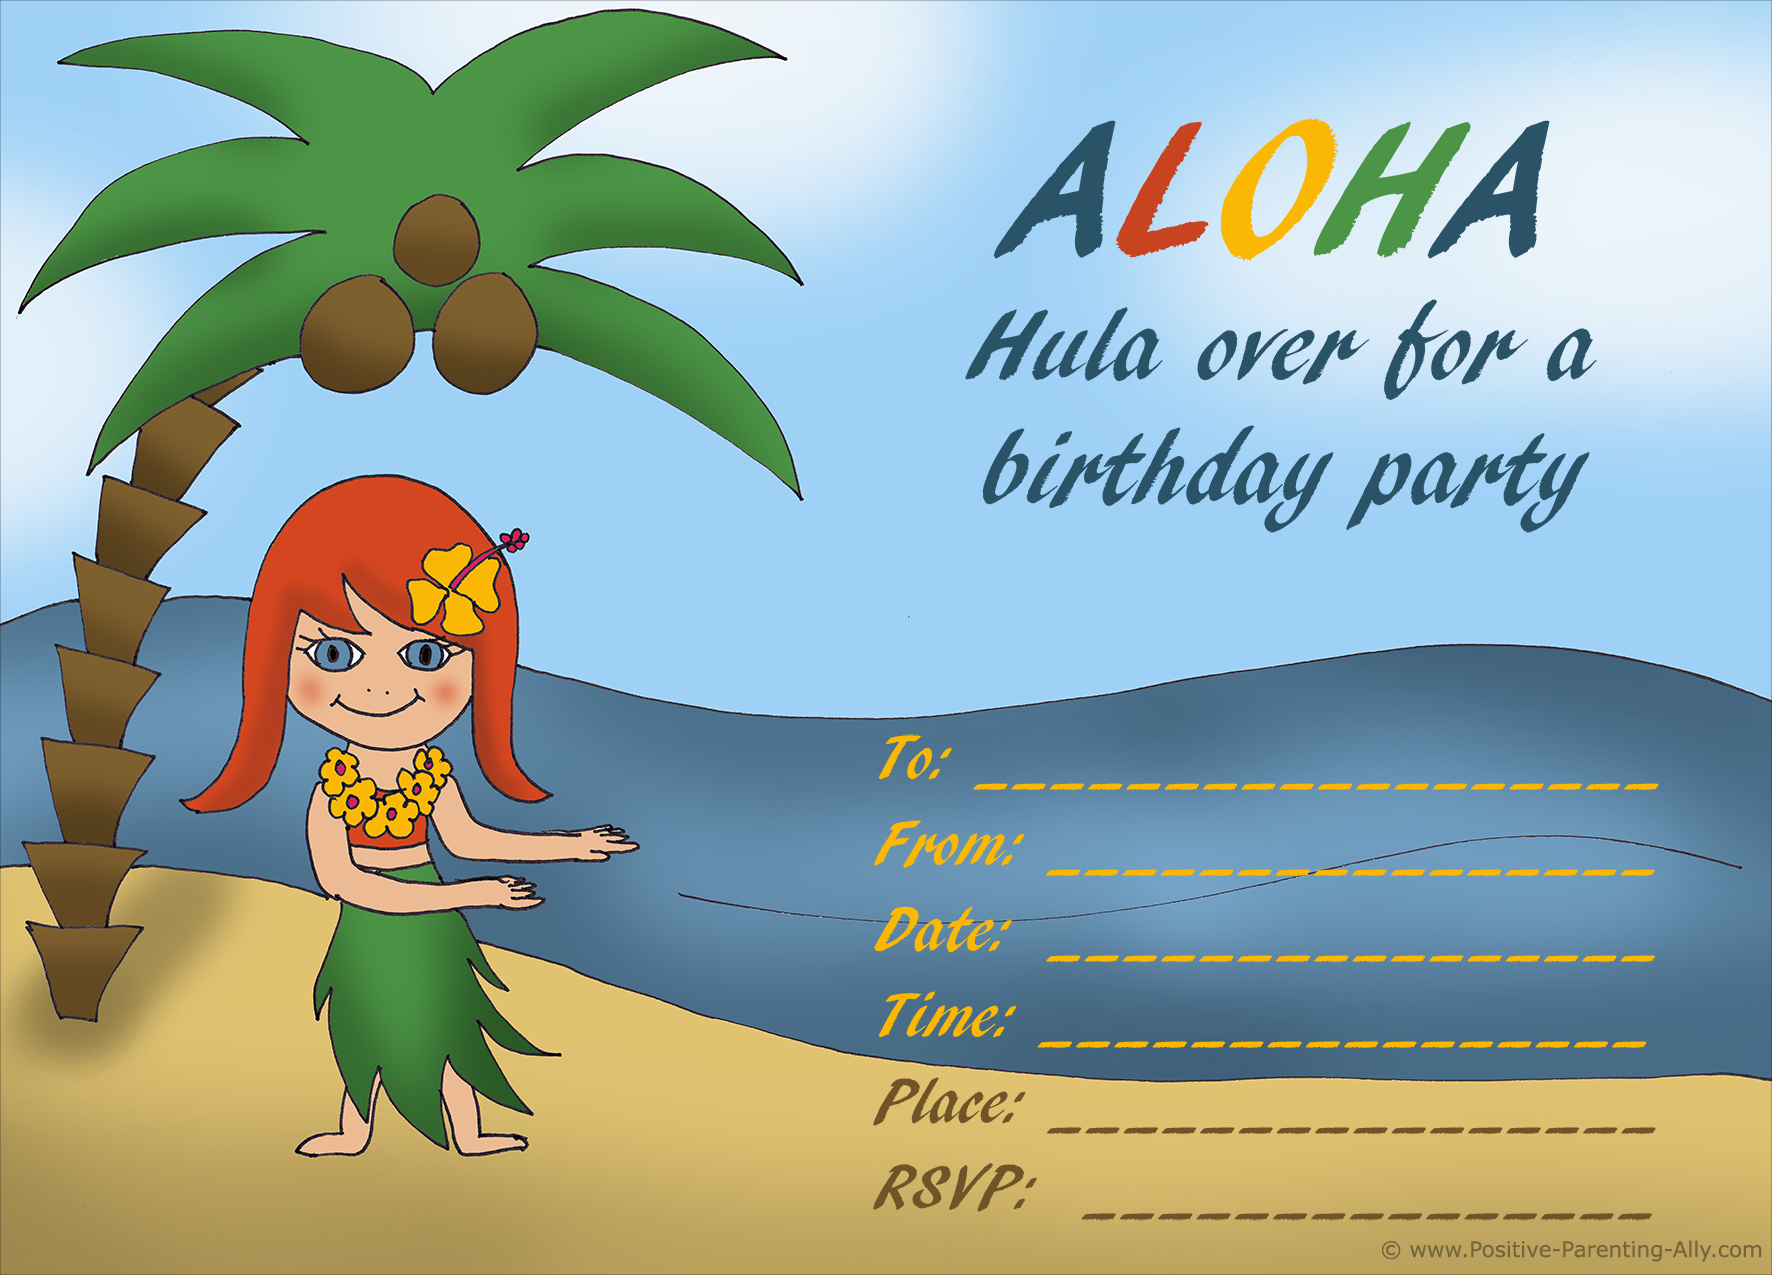 Hawaii hula girl birthday invitation.